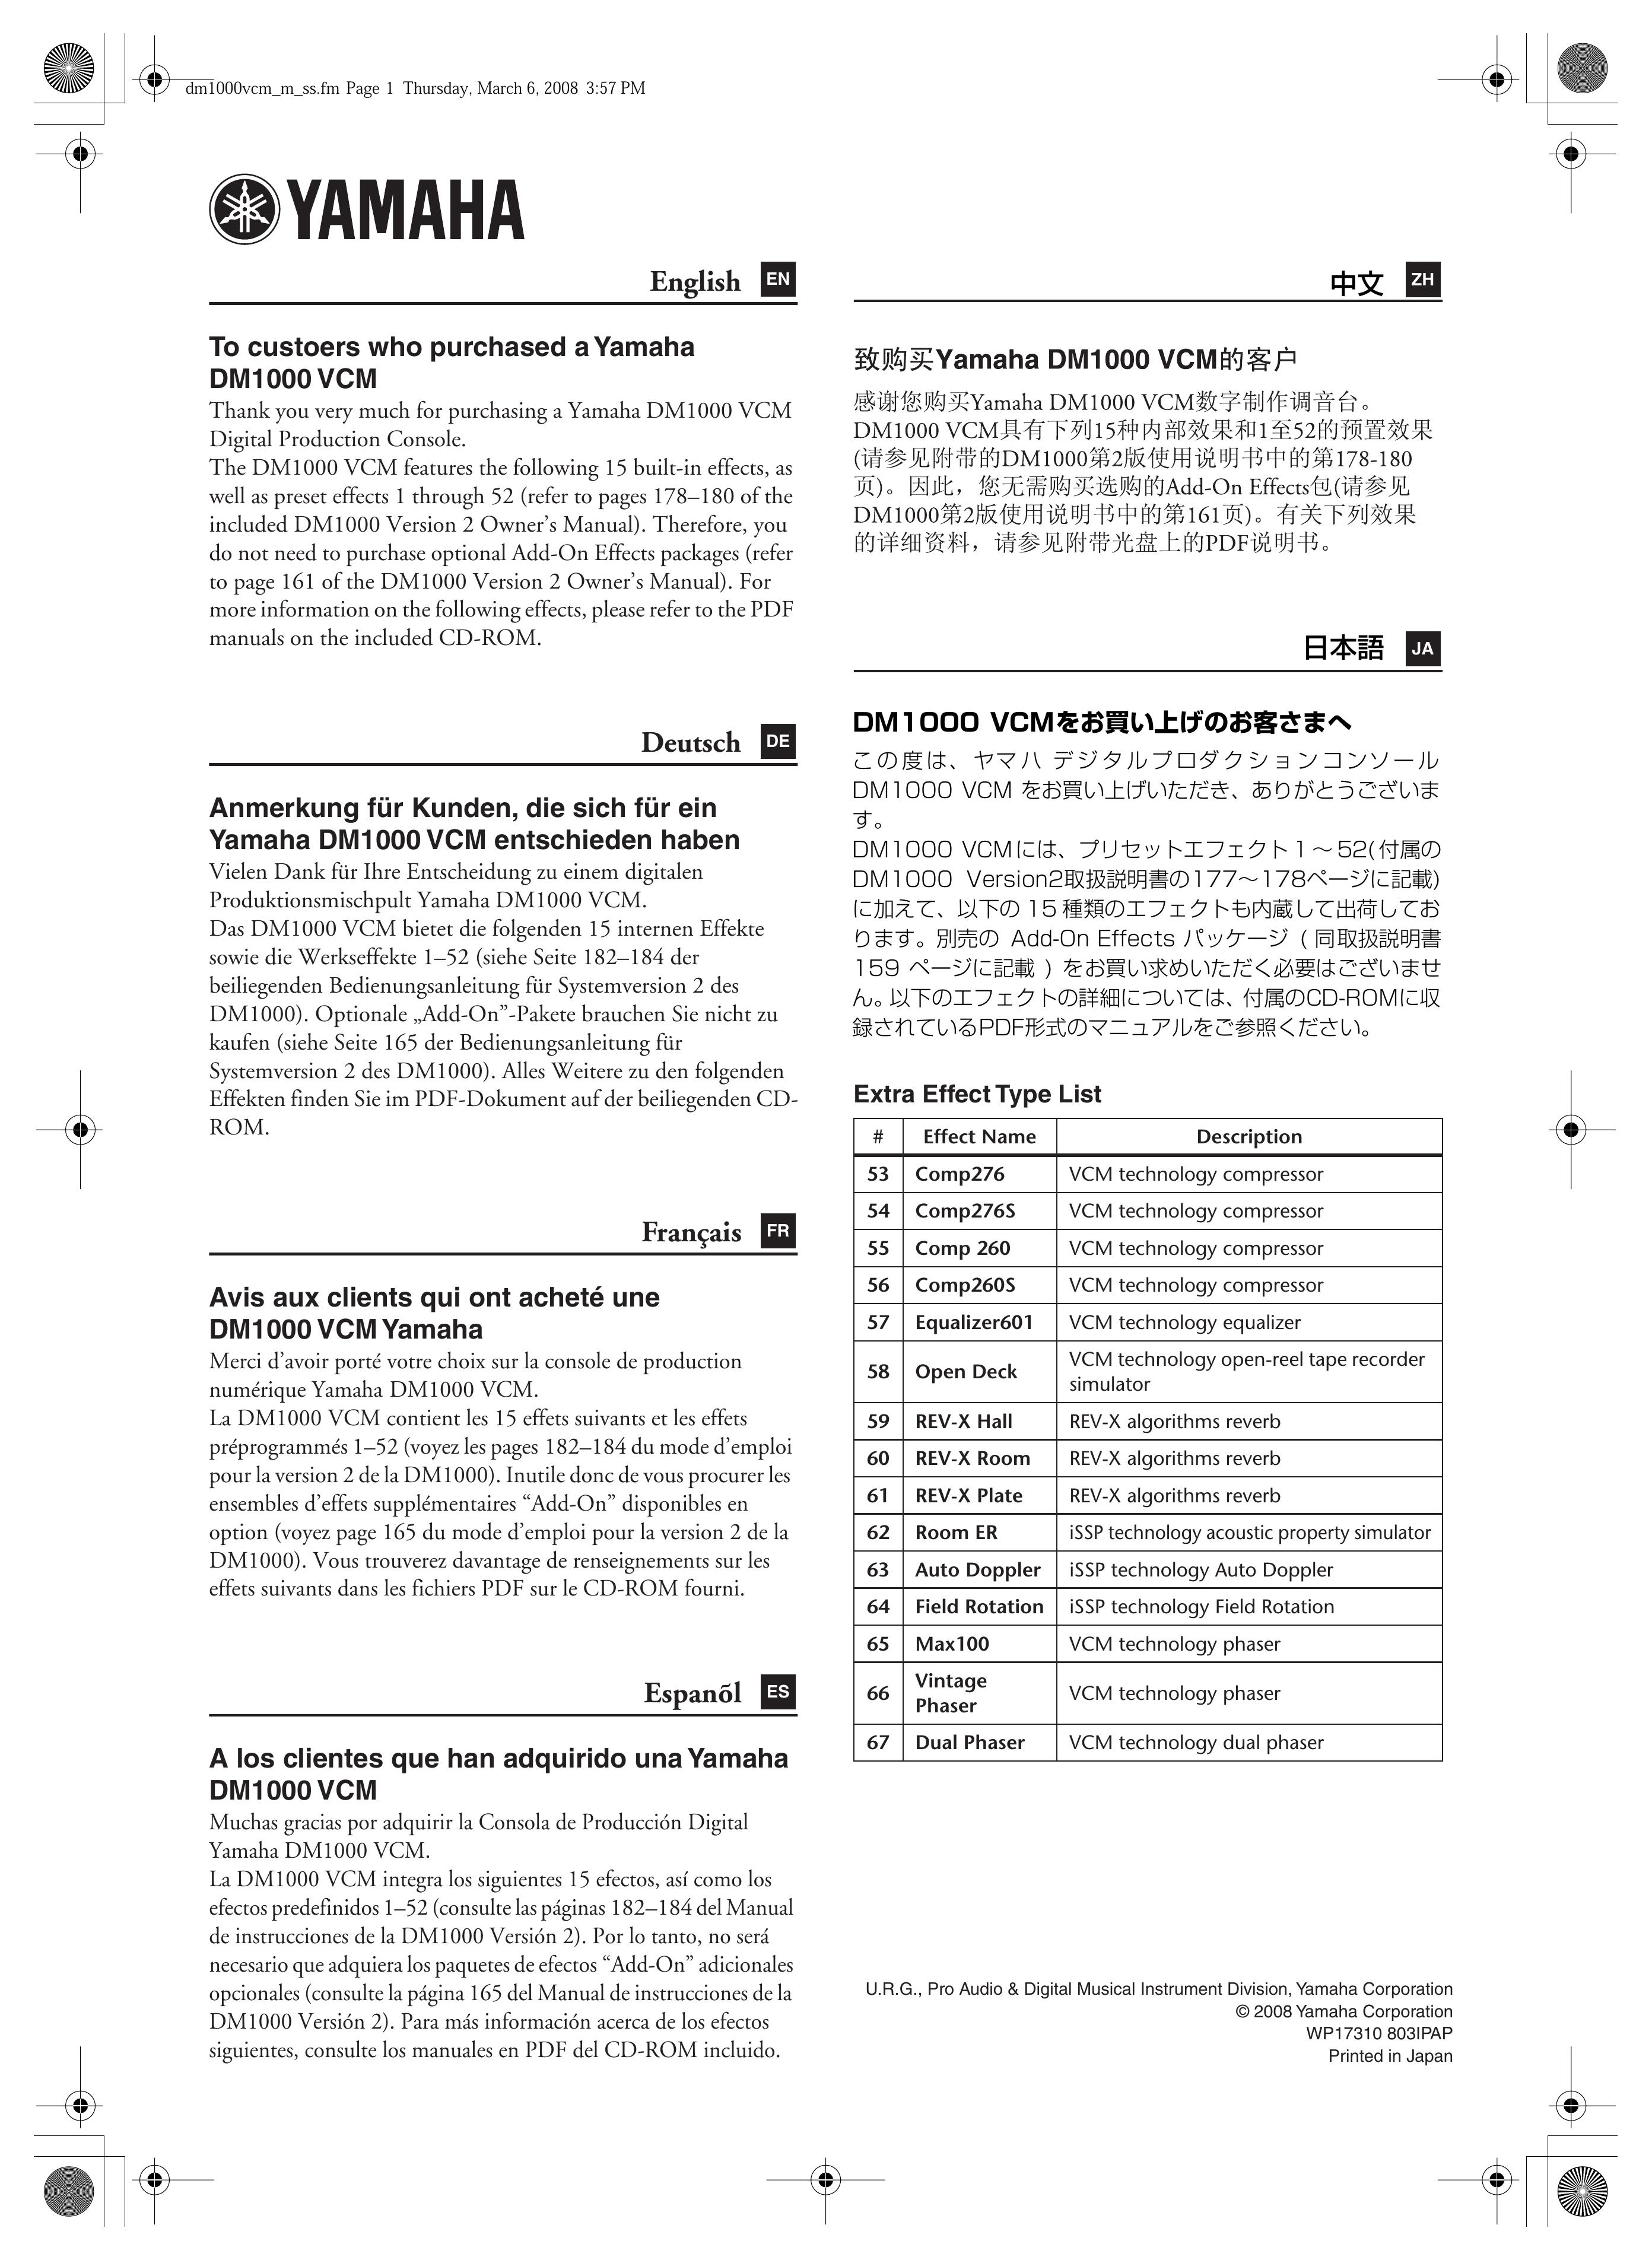 Yamaha DM1000 VCM Music Mixer User Manual